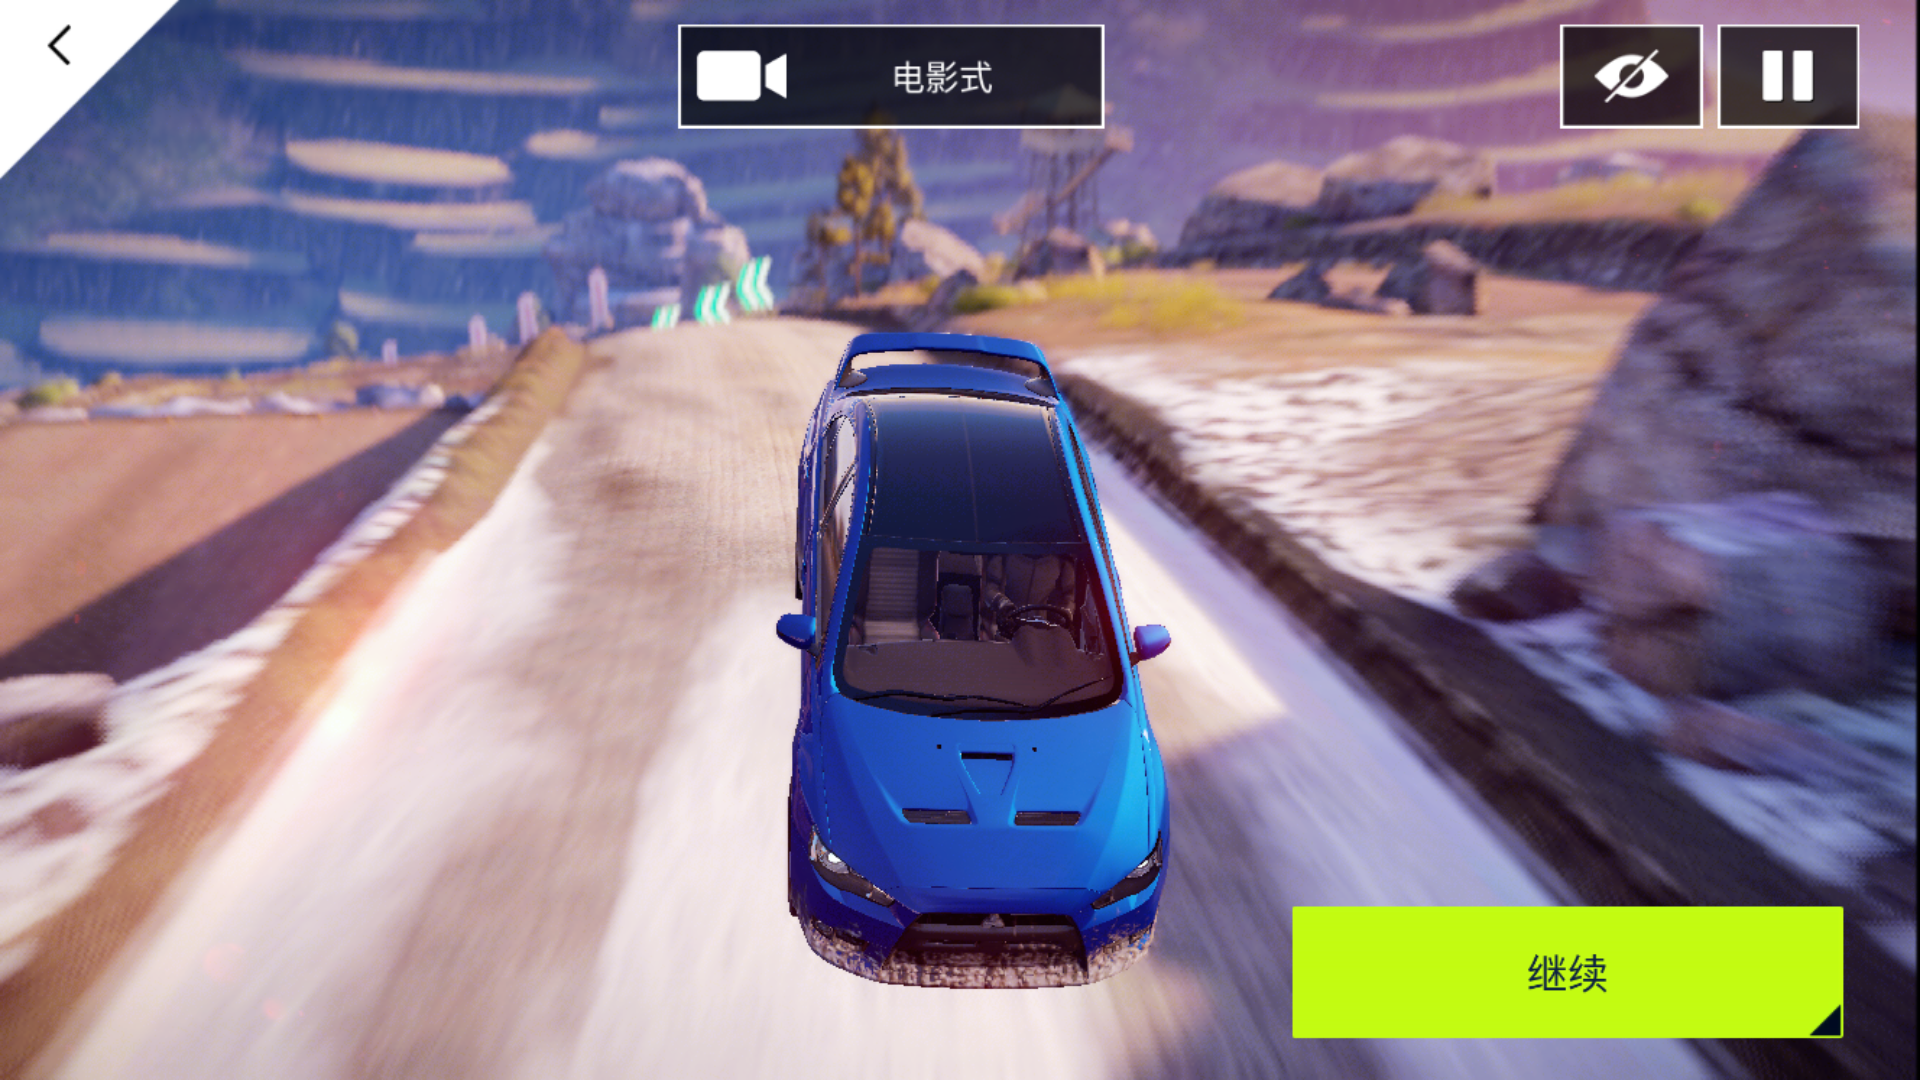 2018手机最佳赛车游戏 狂野飙车9 UI与游戏特效设计欣赏-云瑞设计